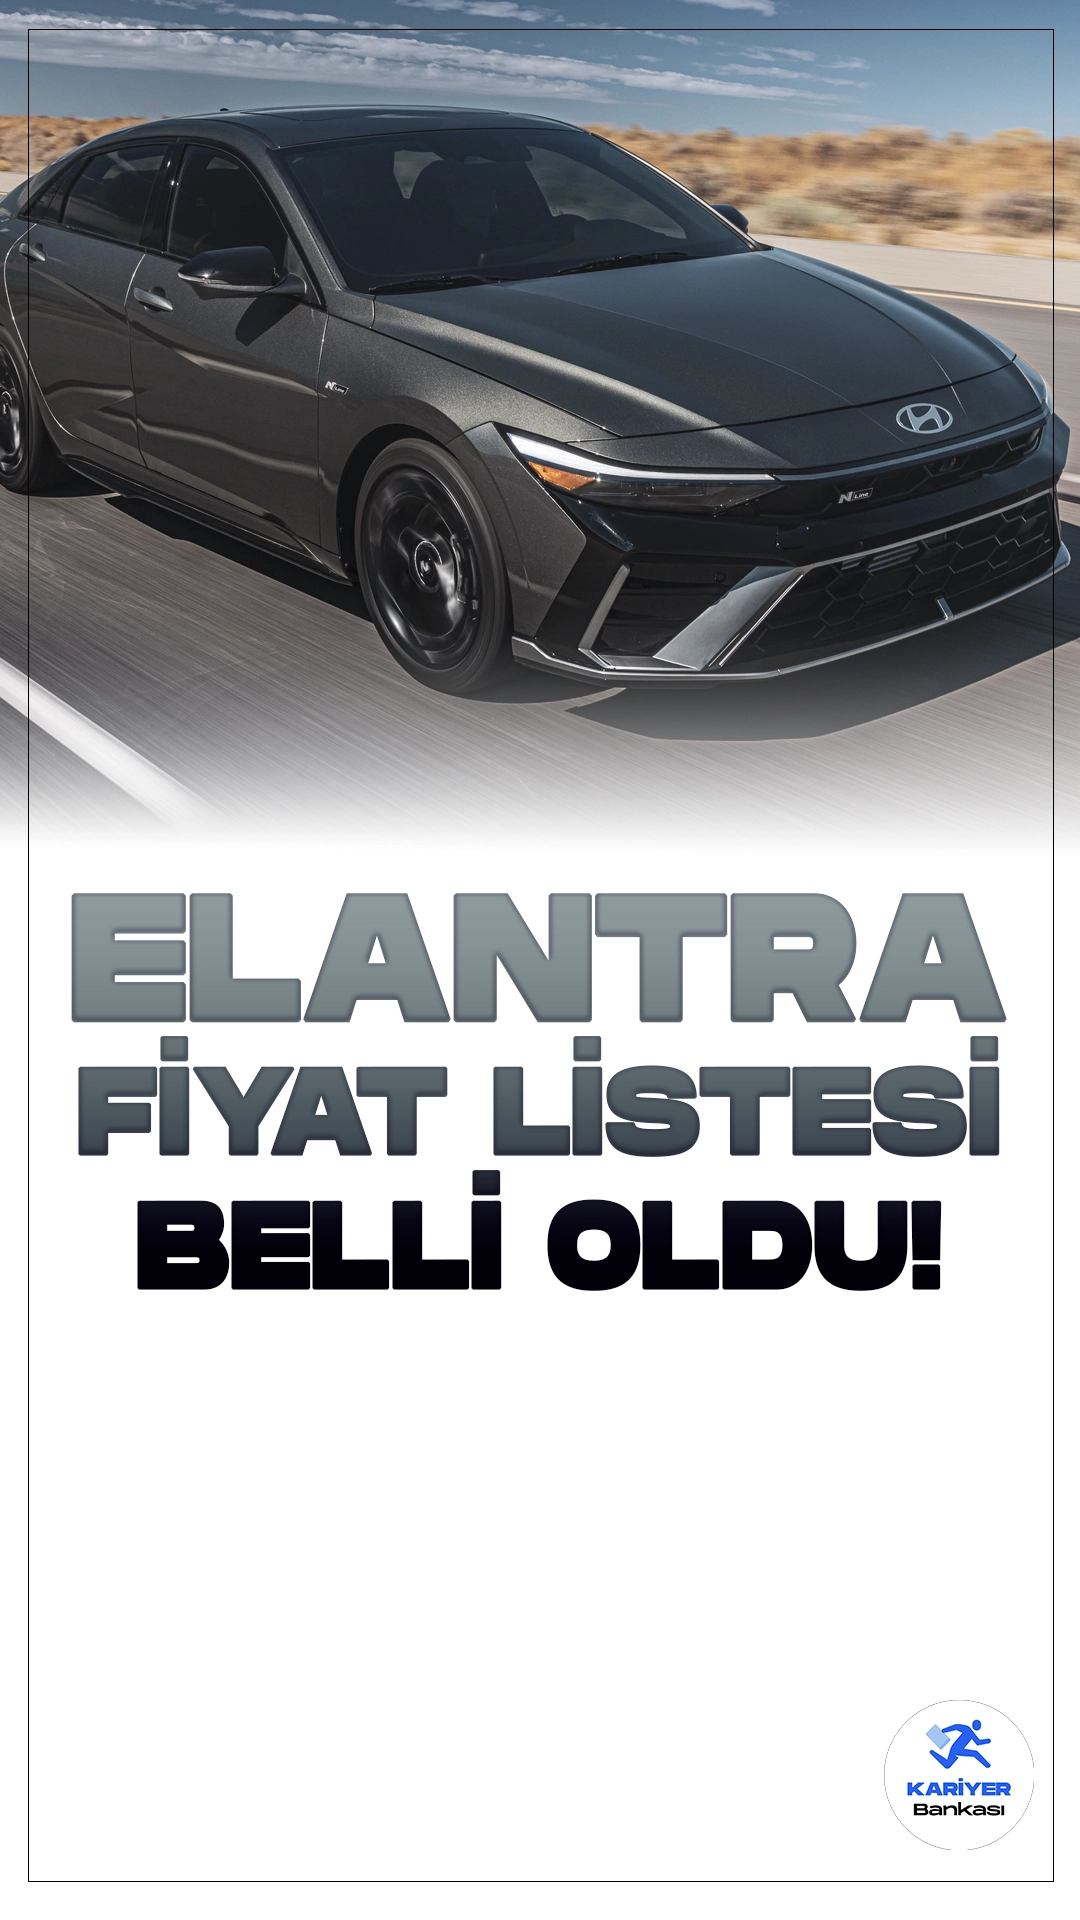 Hyundai Elantra Nisan 2024 Fiyat Listesi Belli Oldu!Hyundai, otomotiv dünyasında dinamik bir varlık olarak sürekli kendini yenileyen ve geliştiren bir marka olarak bilinir. Son modeli Elantra ile de bu geleneği sürdürüyor. Yenilikçi tasarımı ve güçlü performansıyla dikkat çeken Hyundai Elantra, sınıfında öne çıkan bir araç olmaya aday.